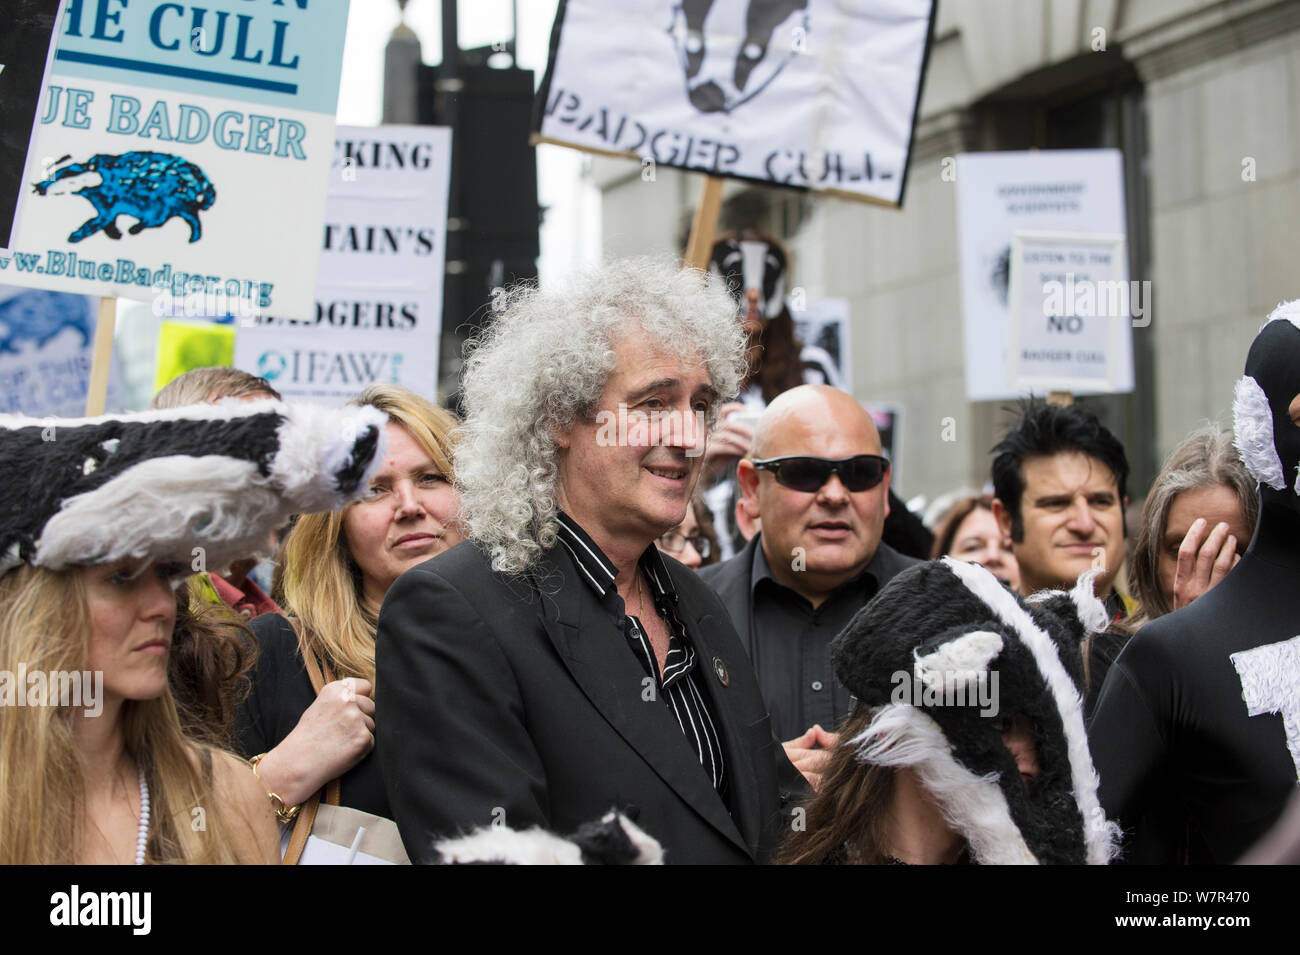 Rock Star et activiste Brian May mène à badger marcheurs anti réforme, mars 2013 Londres le 1er juin. Banque D'Images